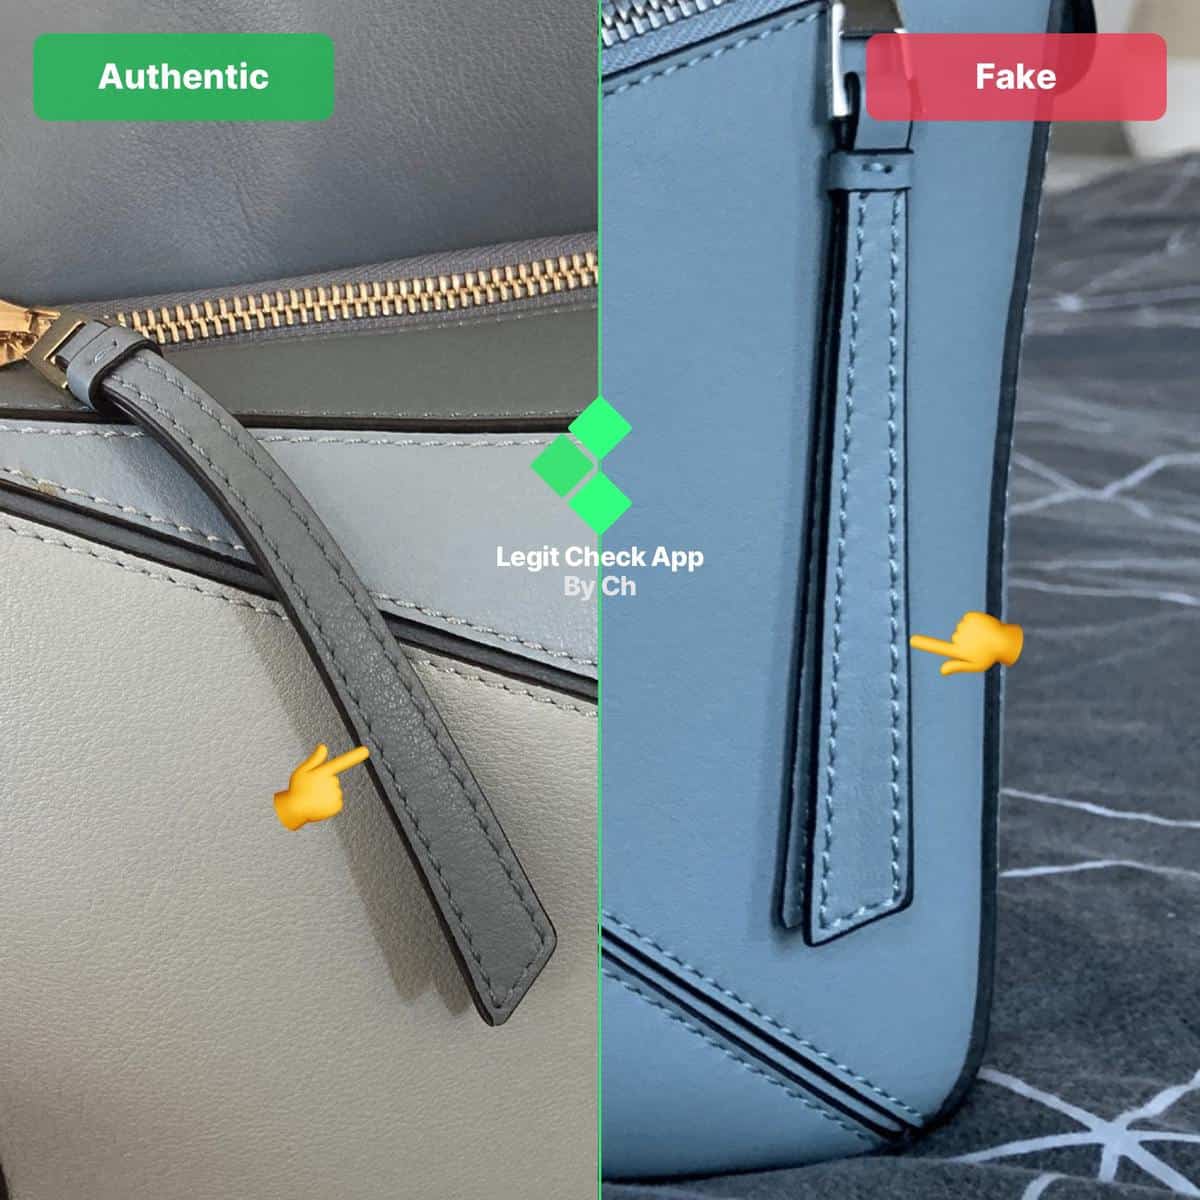 How To Spot Real Vs Fake Loewe Gate Bag – LegitGrails